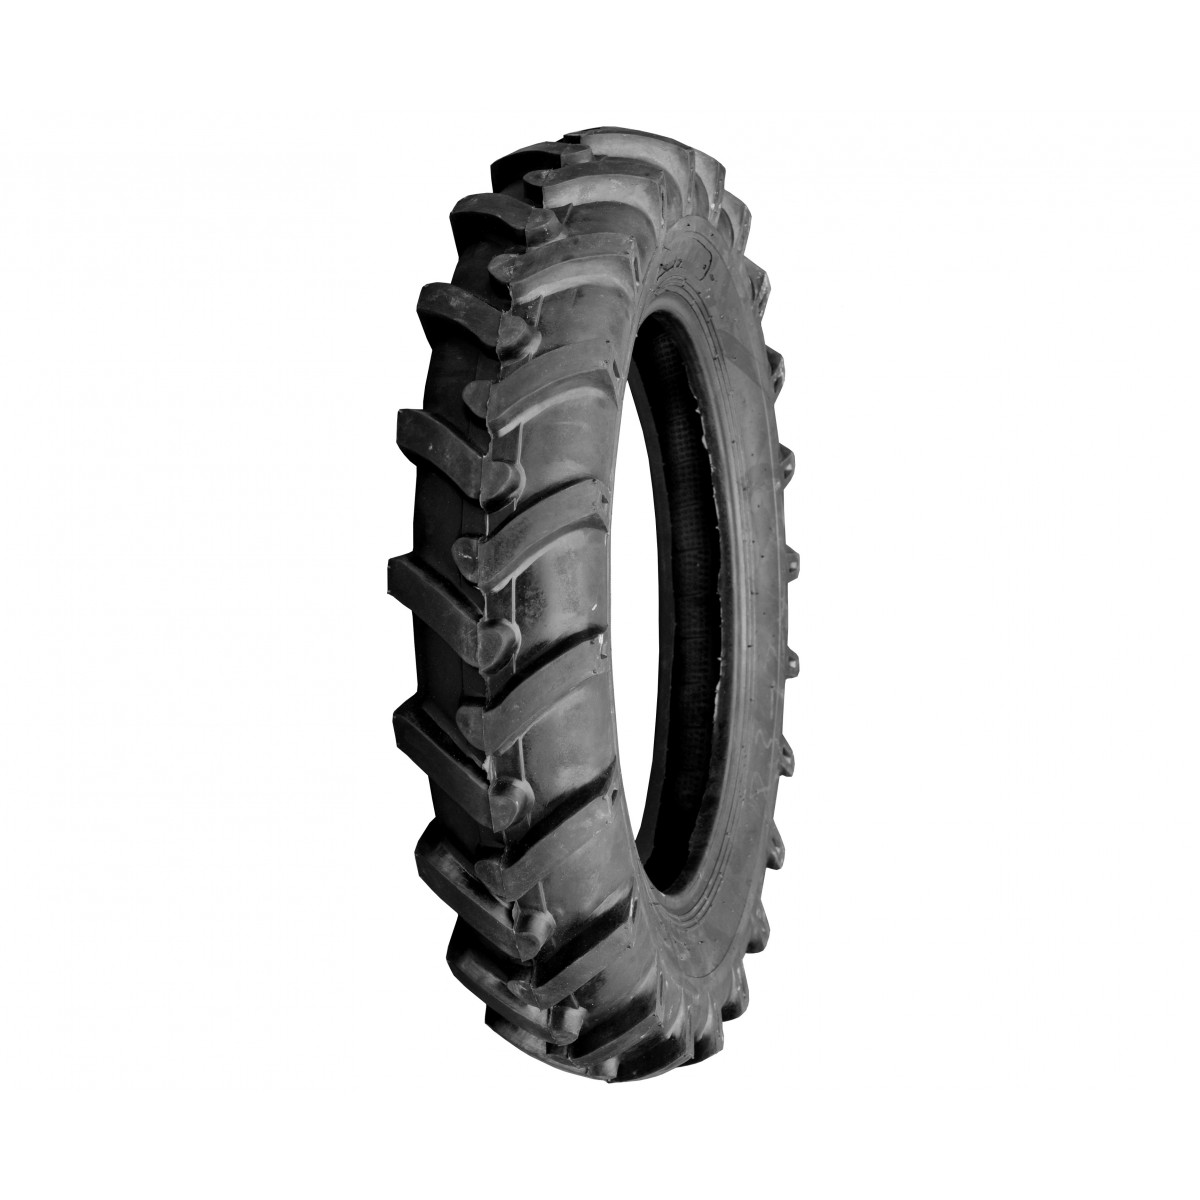 Agricultural tire 8.3-24 8PR 8.3x24 FIR